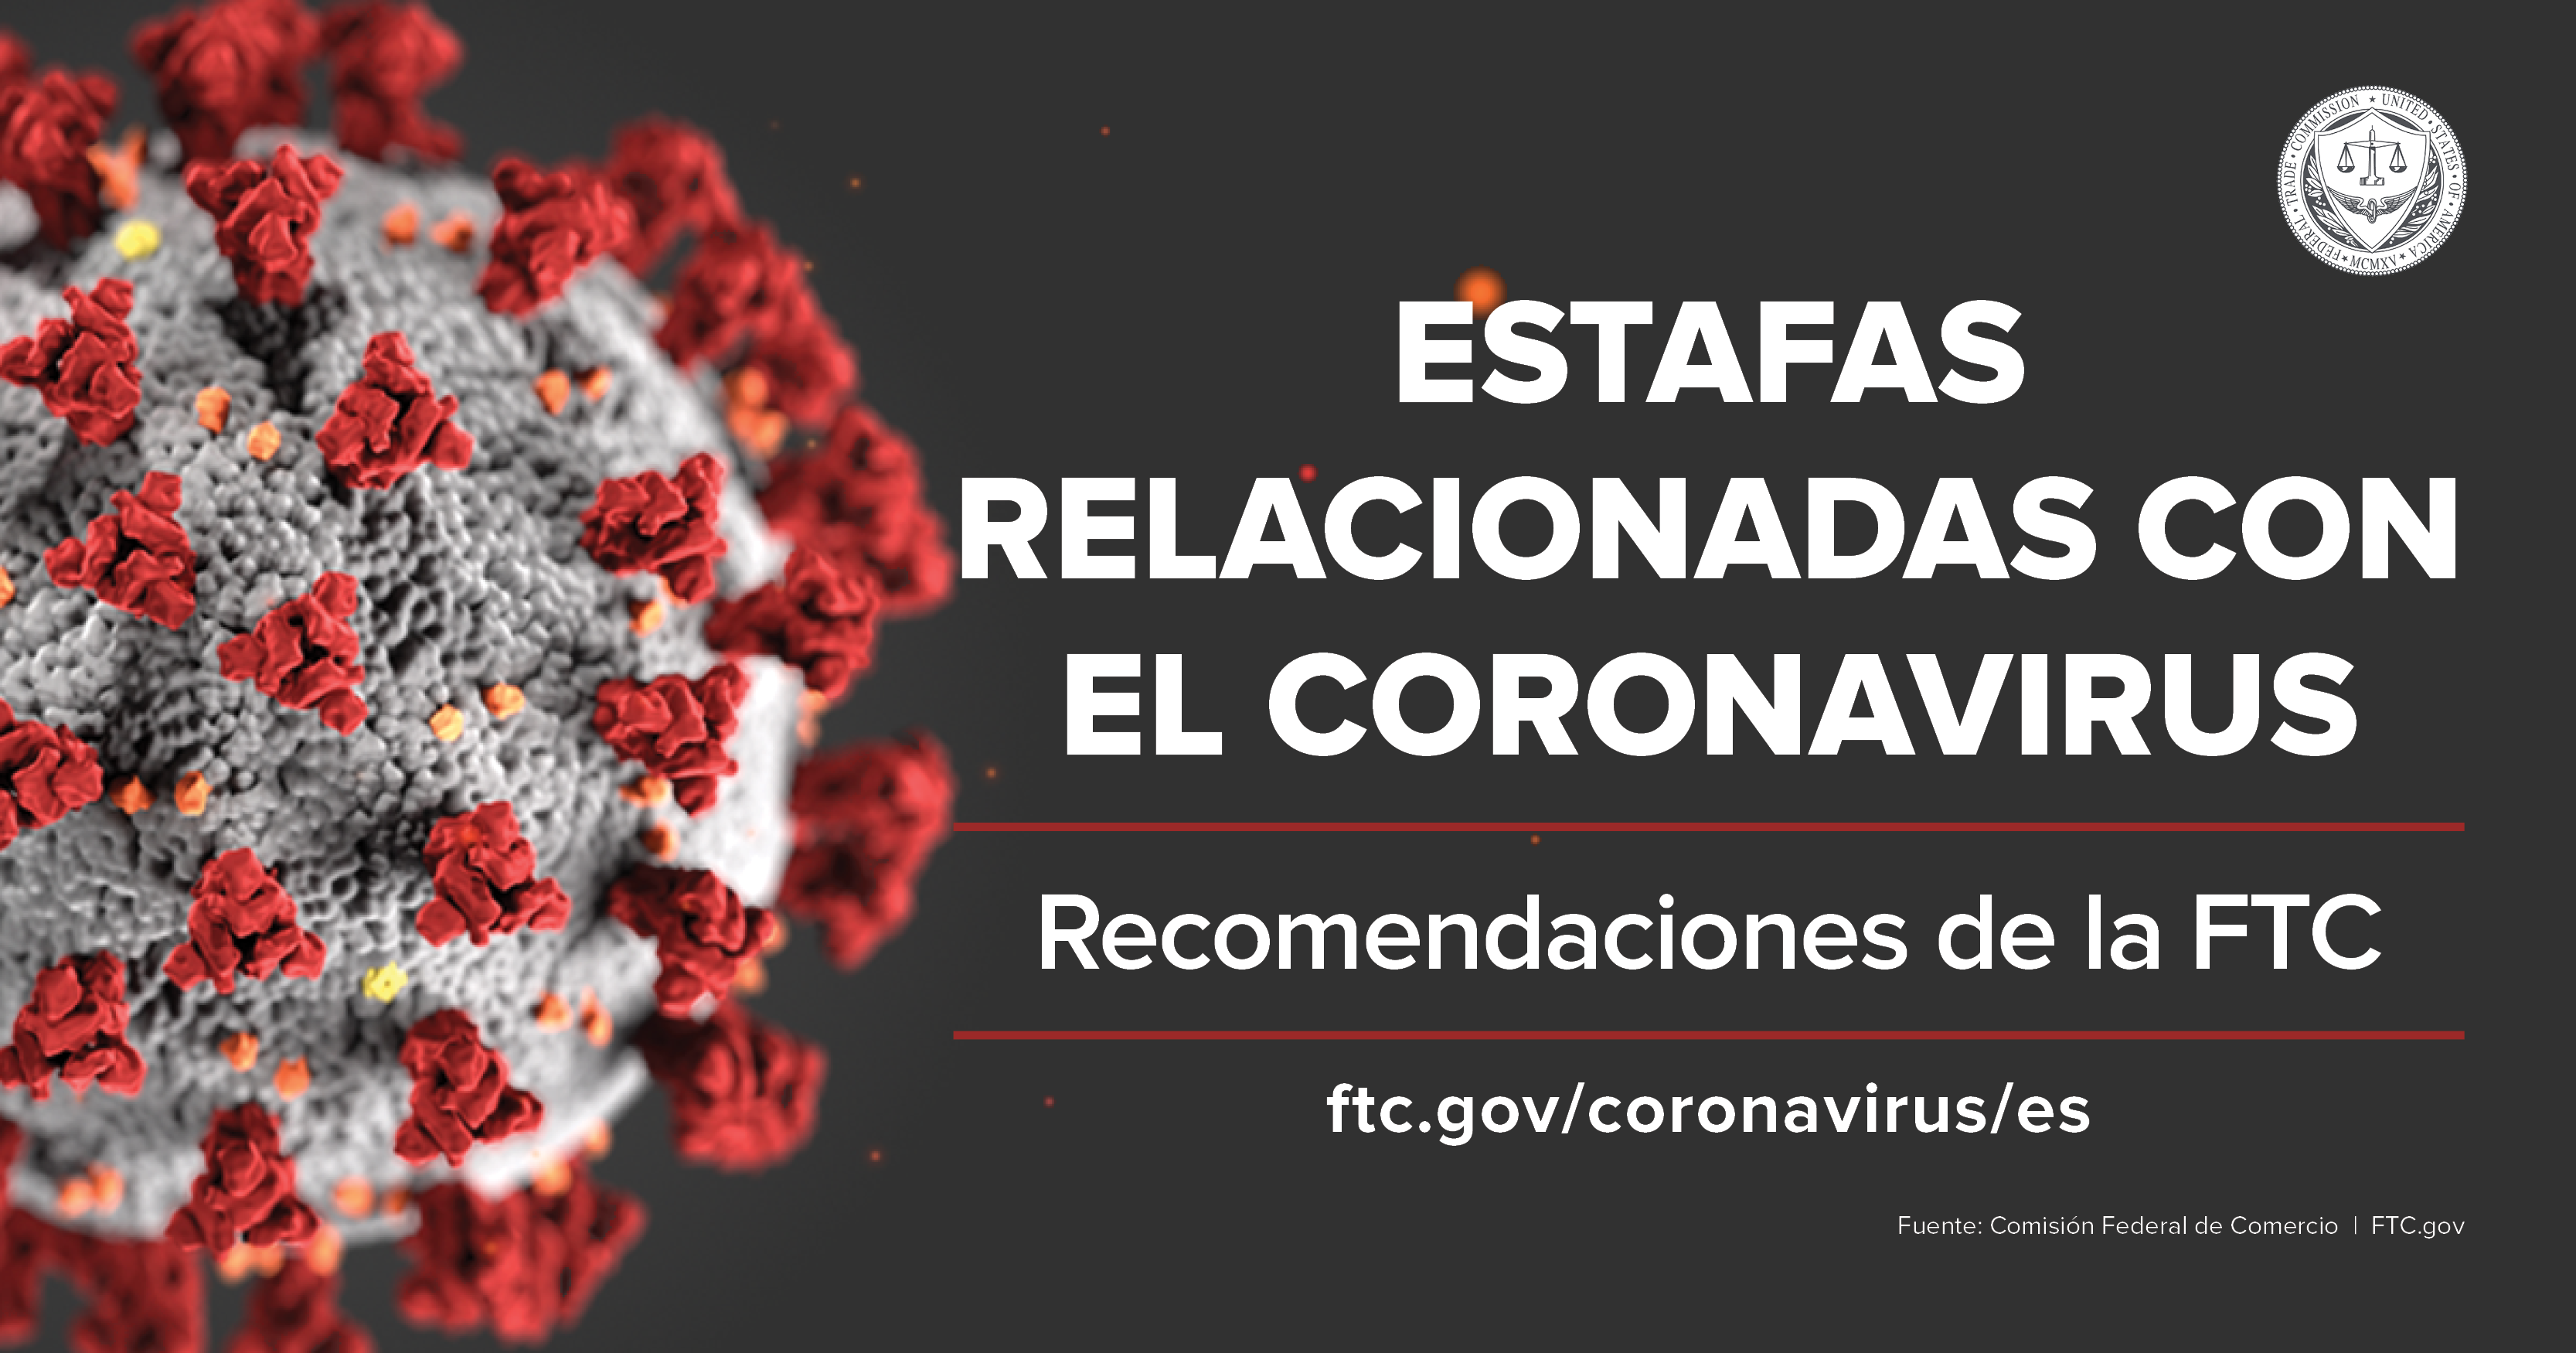 Estafas relacionadas con el coronavirus: Que esta haciendo la FTC